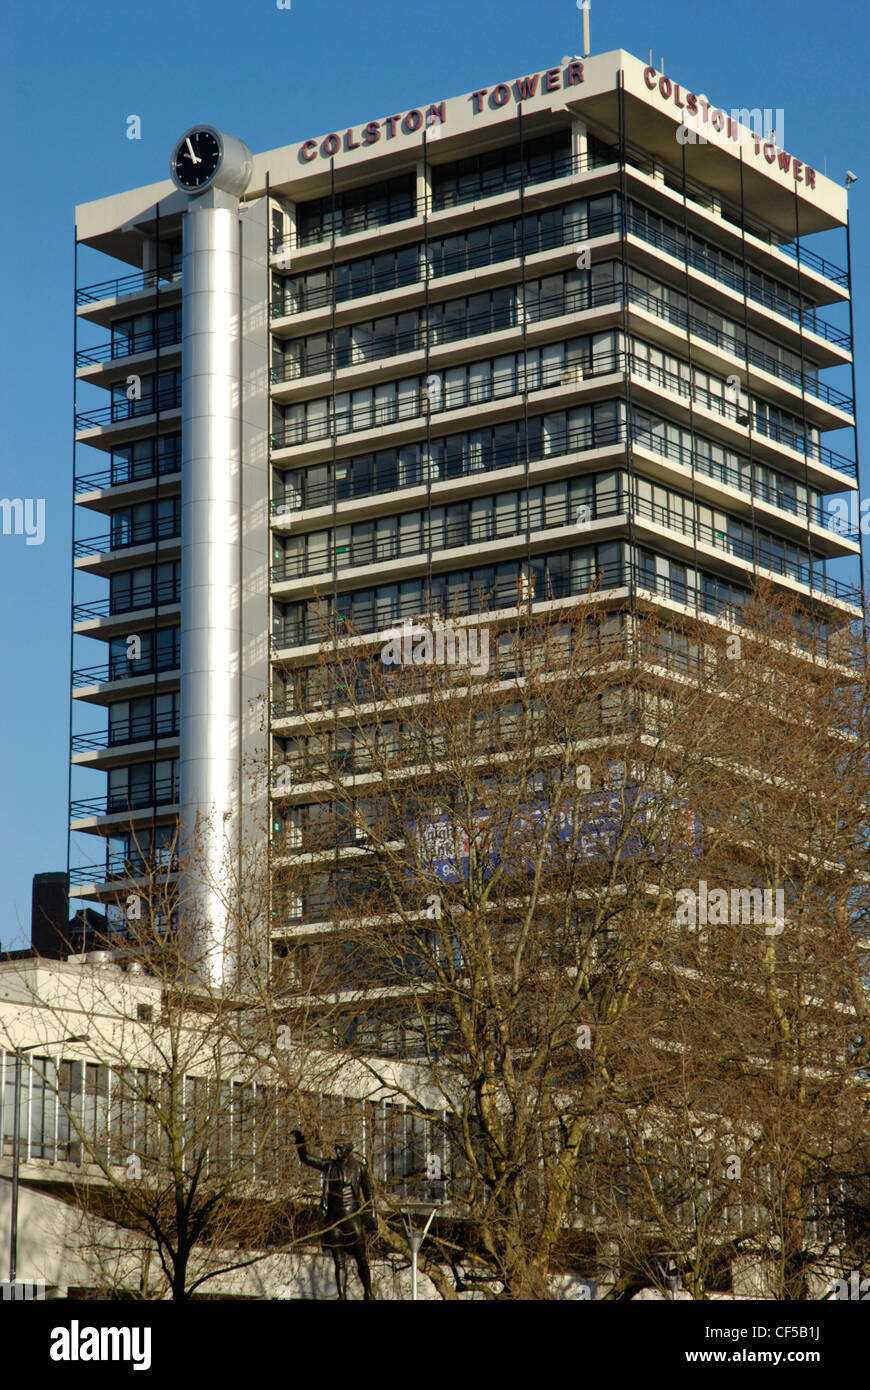 Vue extérieure de la Colston Tower dans le centre-ville de Bristol. Banque D'Images